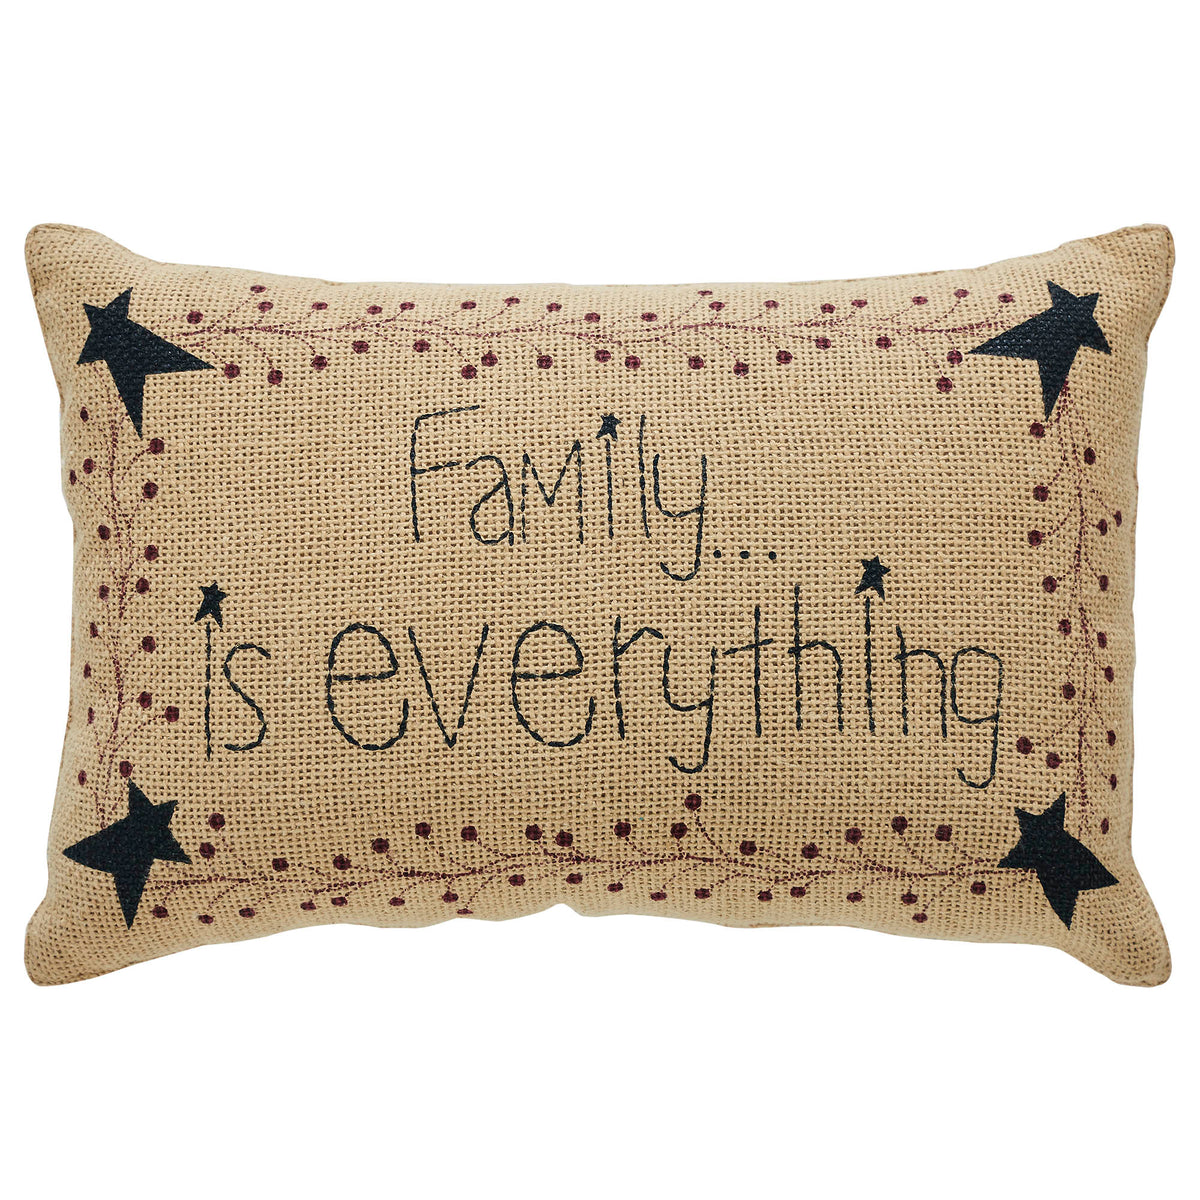 Pip Vinestar Family Pillow 9.5x14